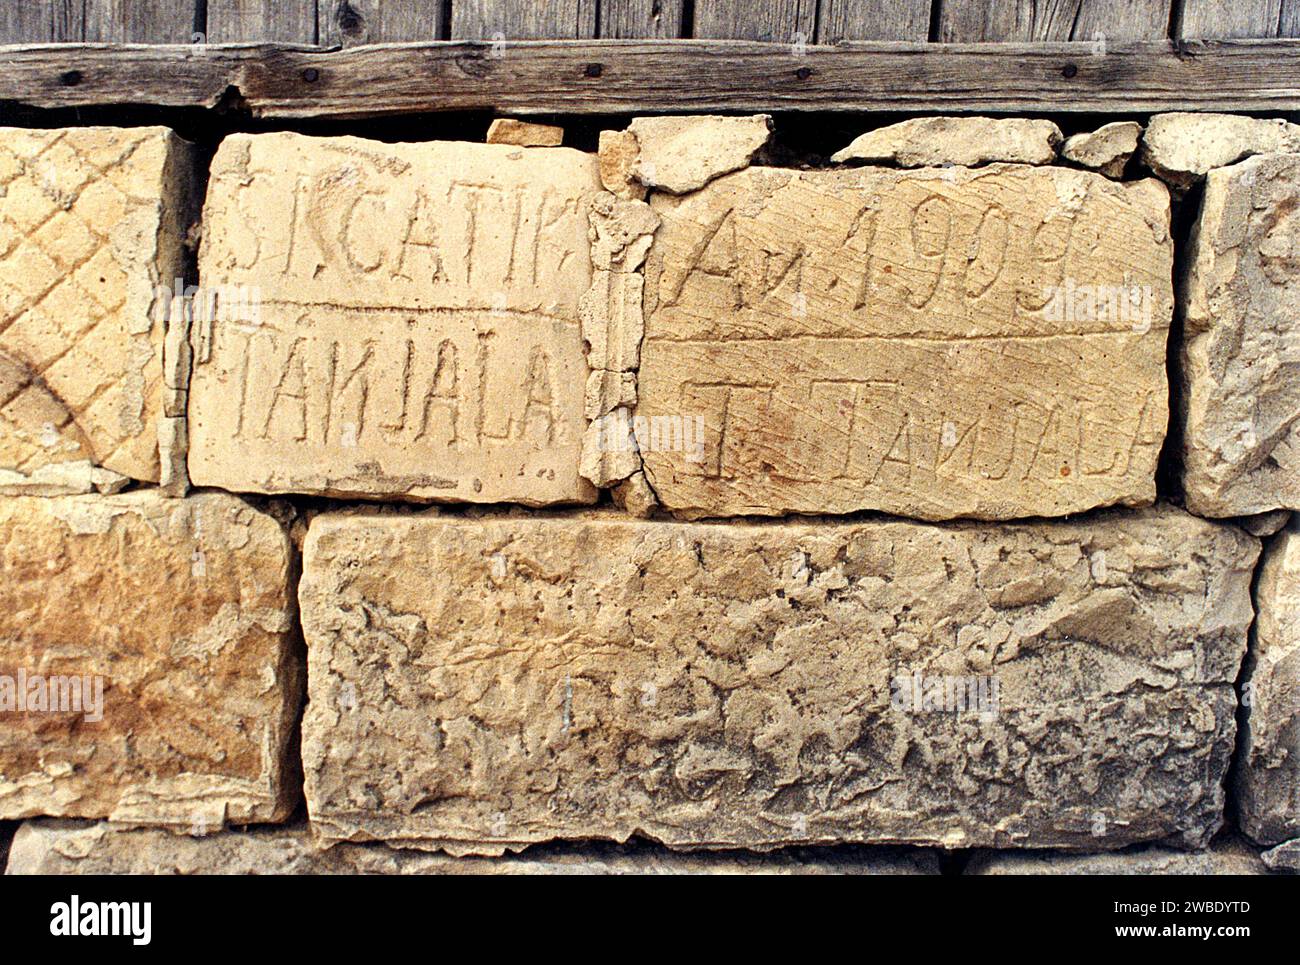 Colacu, Kreis Vrancea, Rumänien, ca. 1990. Inschrift mit dem Familiennamen Tanjala und dem Baujahr 1909 auf der Grundlage eines lokalen Hauses. Stockfoto